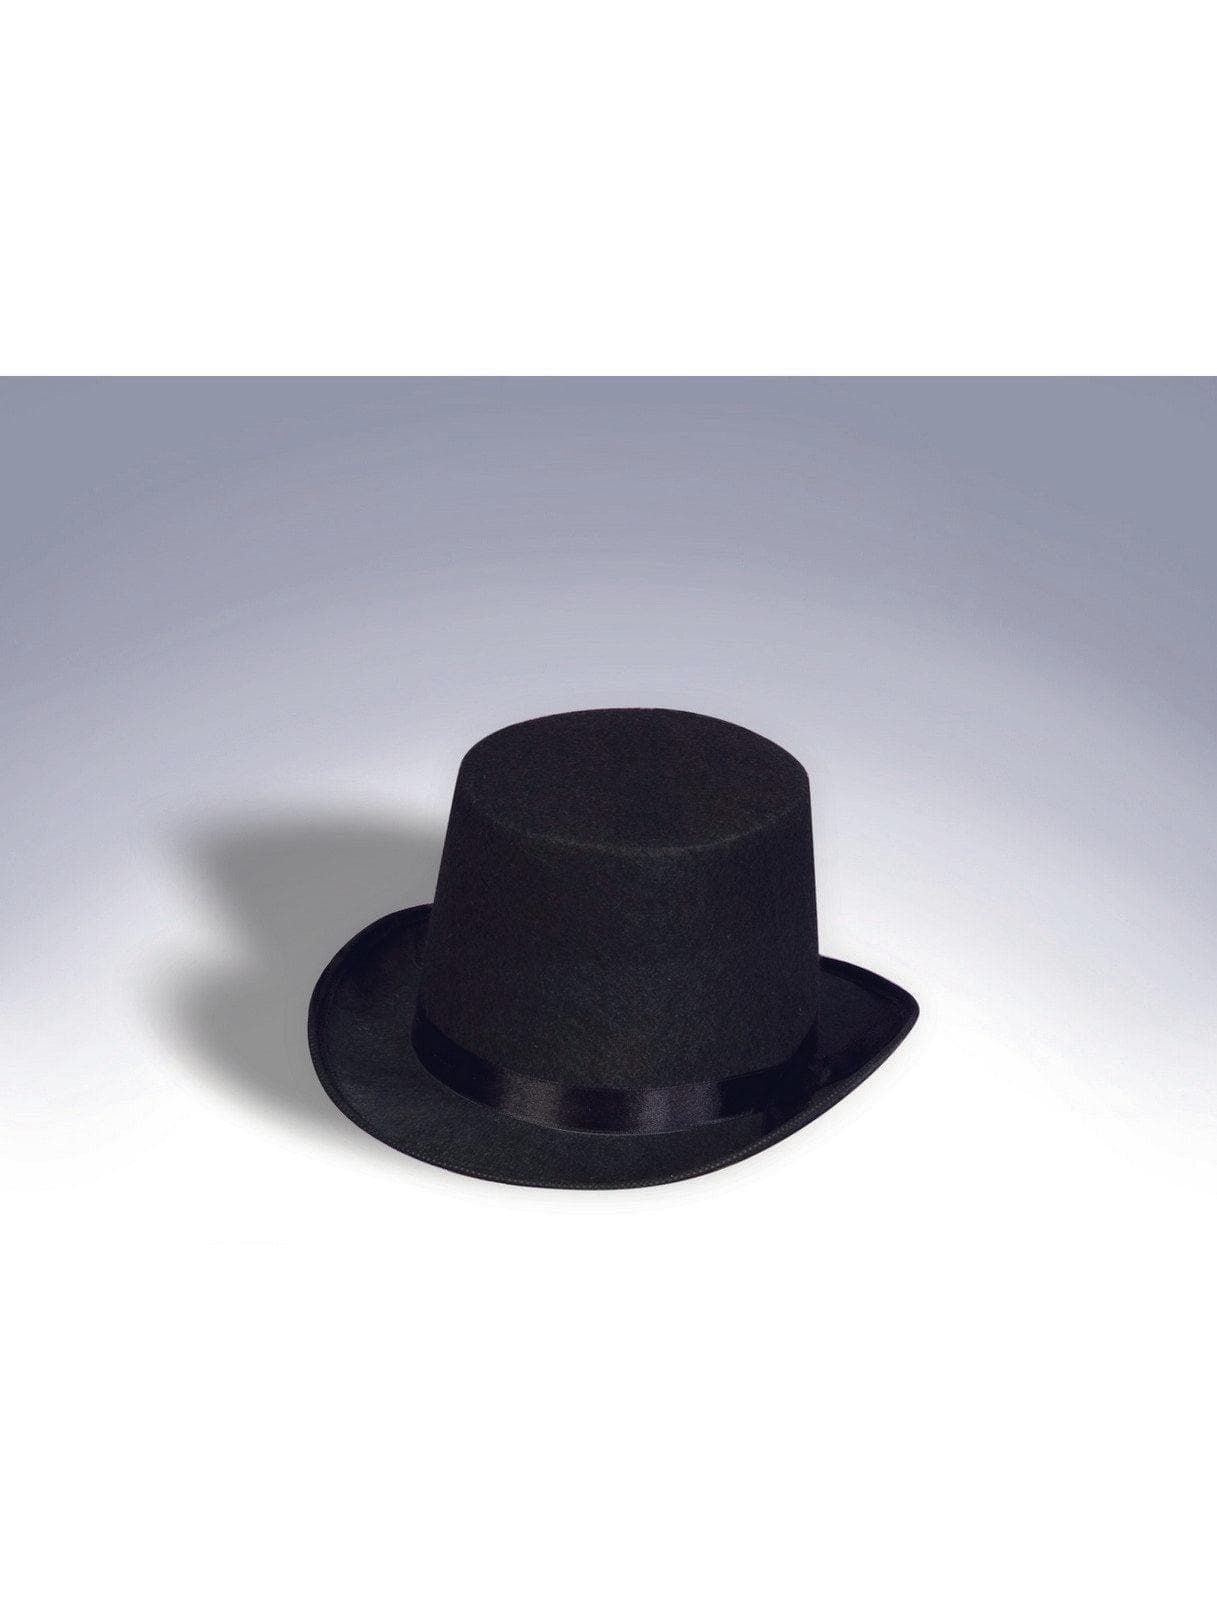 Adult Black Classic Top Hat - costumes.com